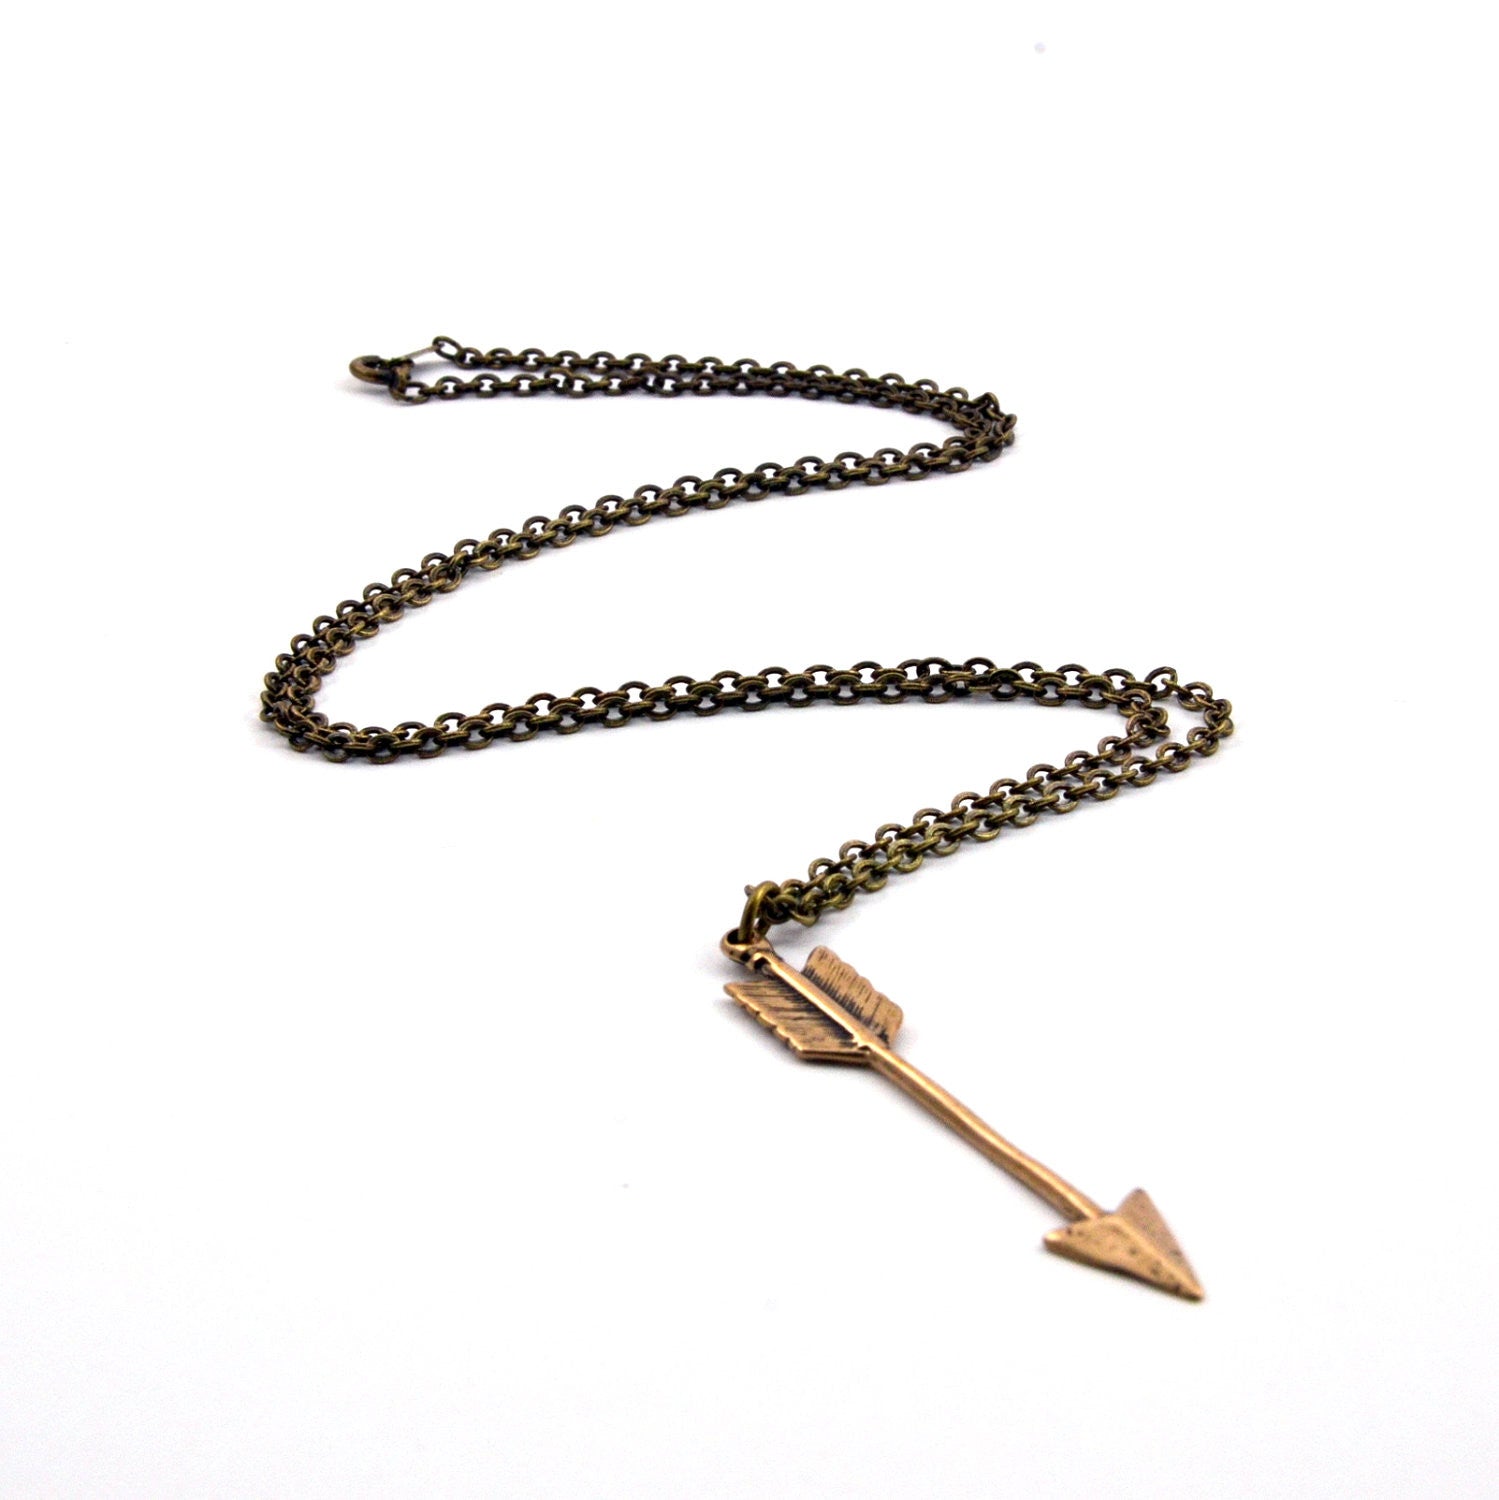 Arrow Necklace - Arrow Pendant - Gwen Delicious Jewelry Designs